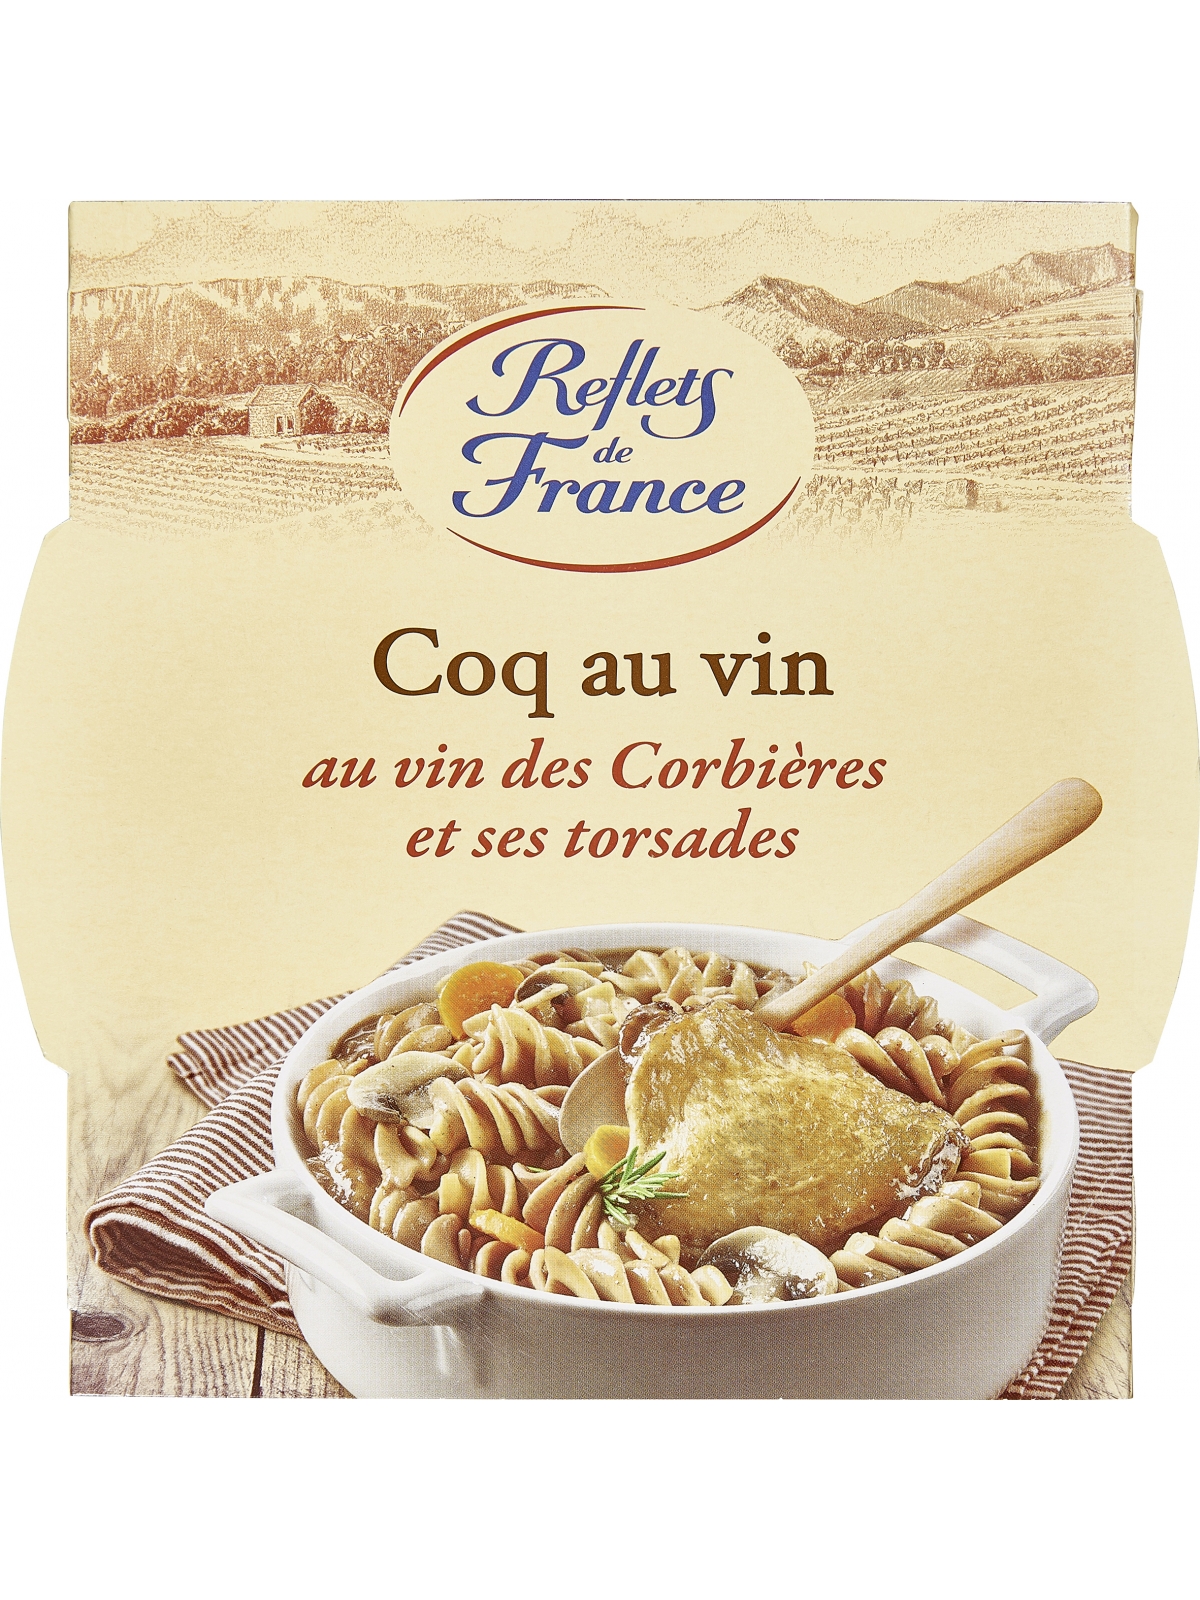 Plat cuisiné coq au vin torsades REFLETS DE FRANCE